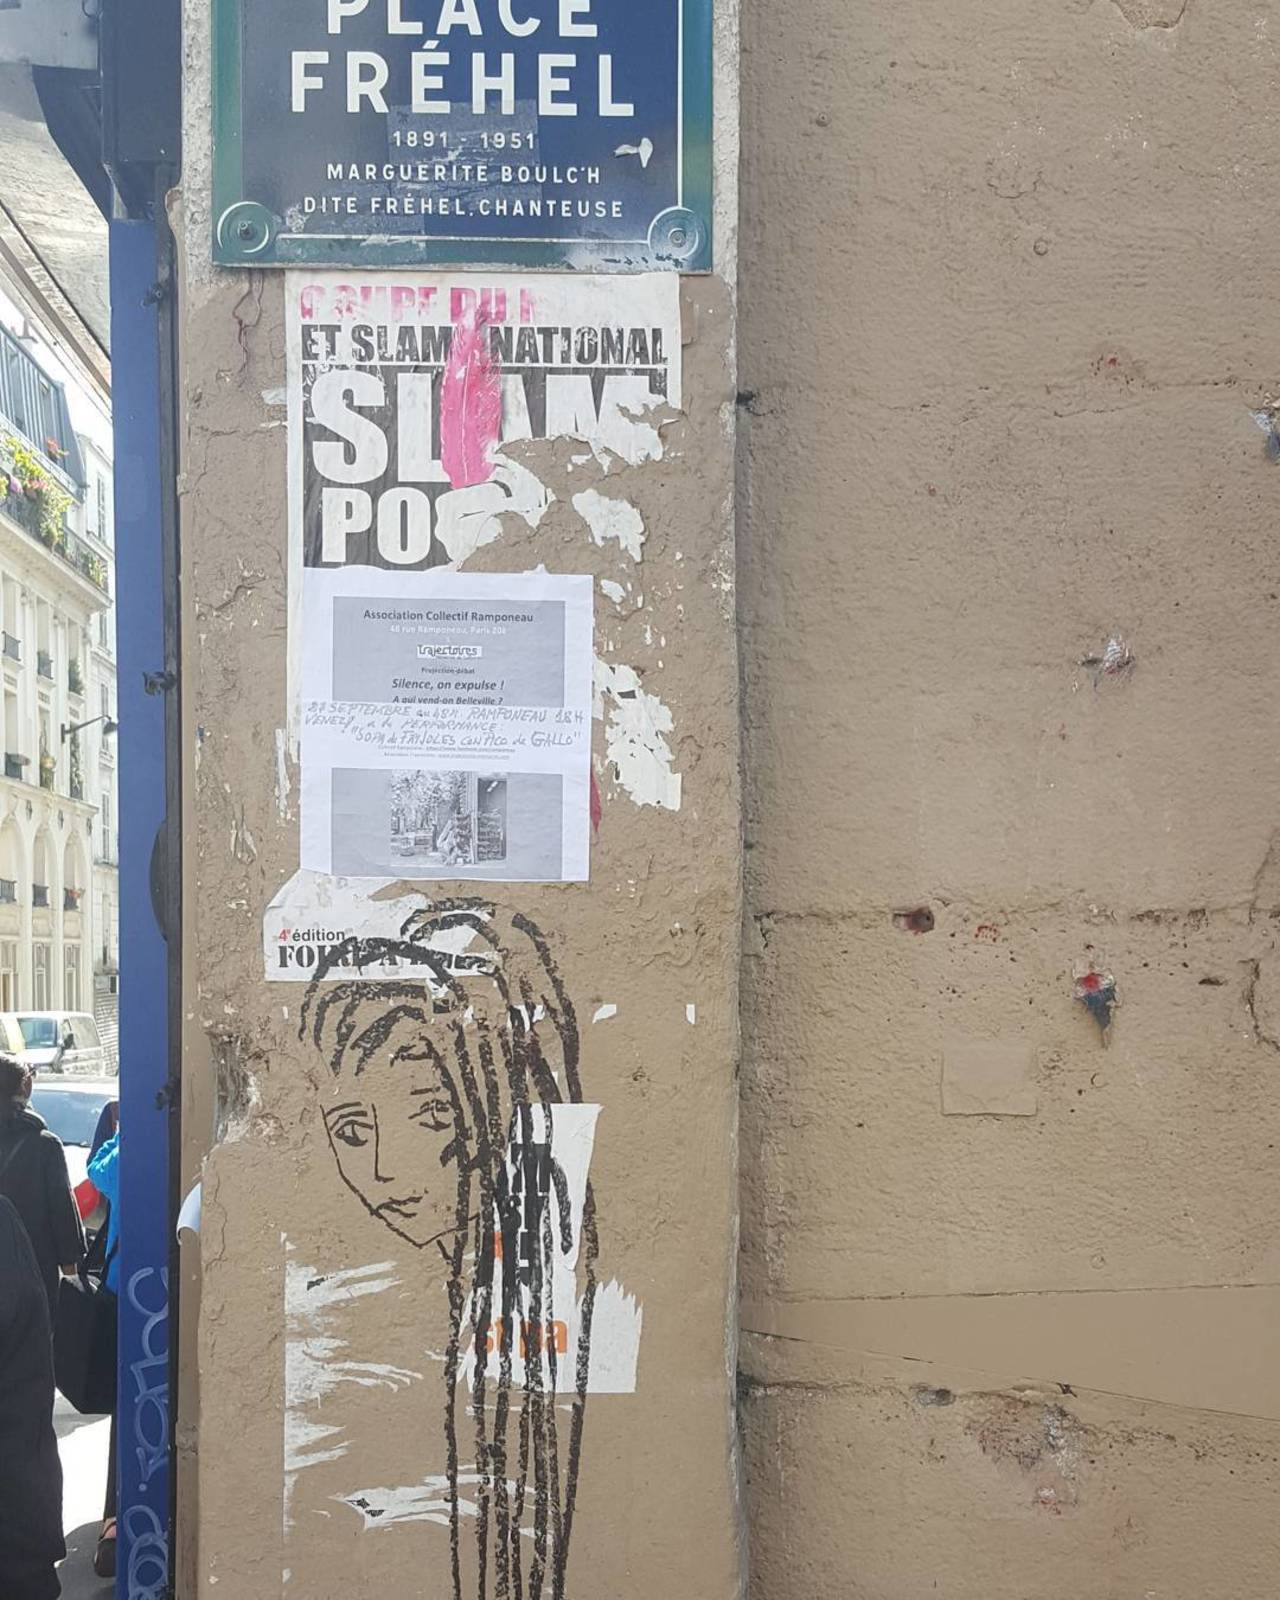 #Paris #graffiti photo by @jdewey67 http://ift.tt/1LTUHH2 #StreetArt http://t.co/ieovsRc8Mm